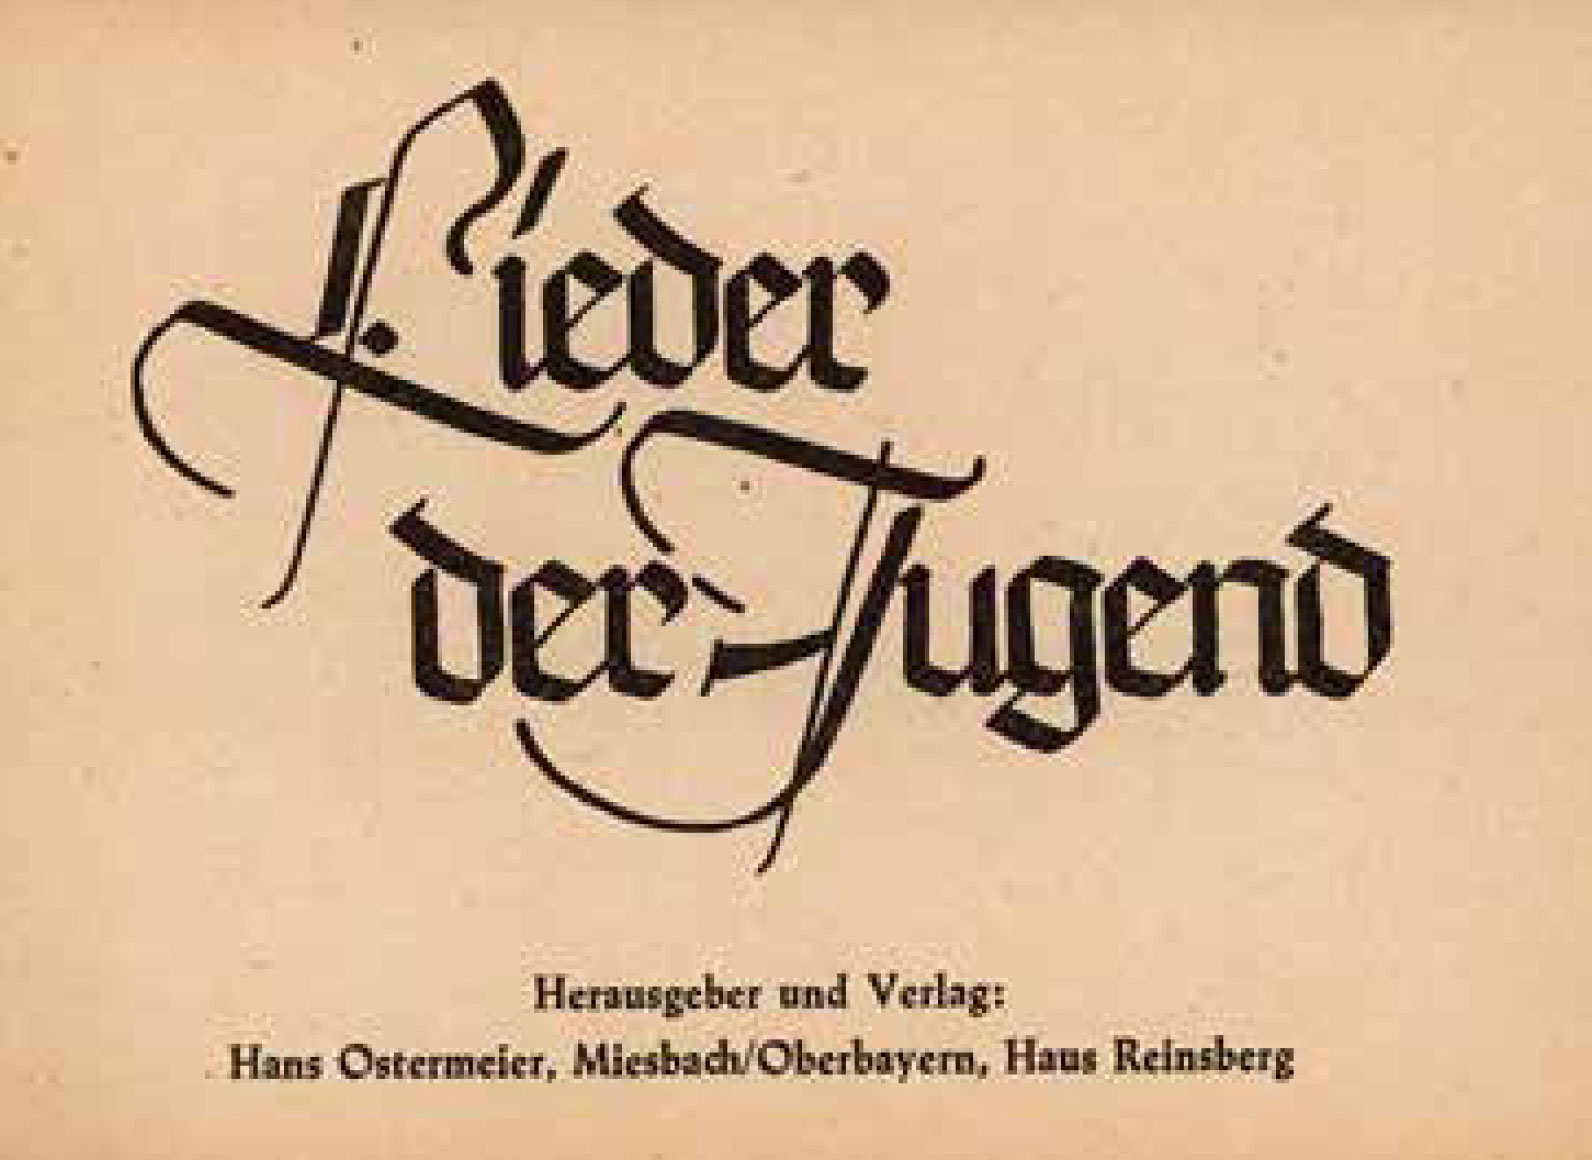 Titelblatt des Liederbuch für Jugendgruppen, in den 60er Jahren sehr beliebt. Druck durch die Firma Bommer